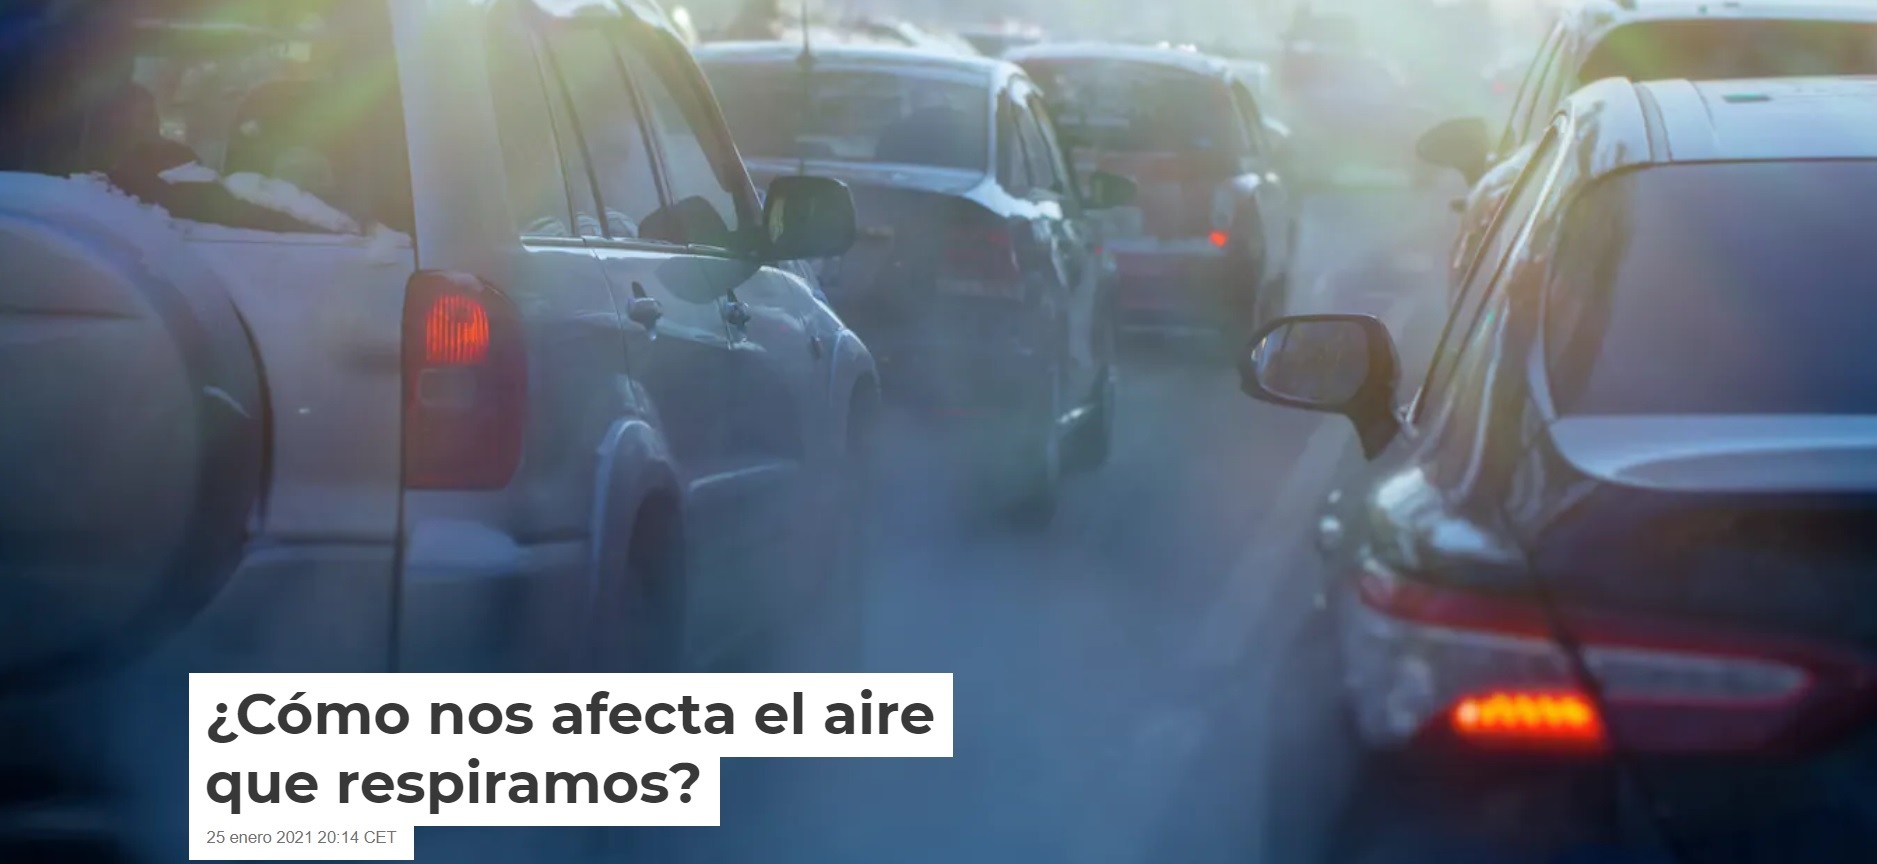 ¿Cómo nos afecta el aire que respiramos?